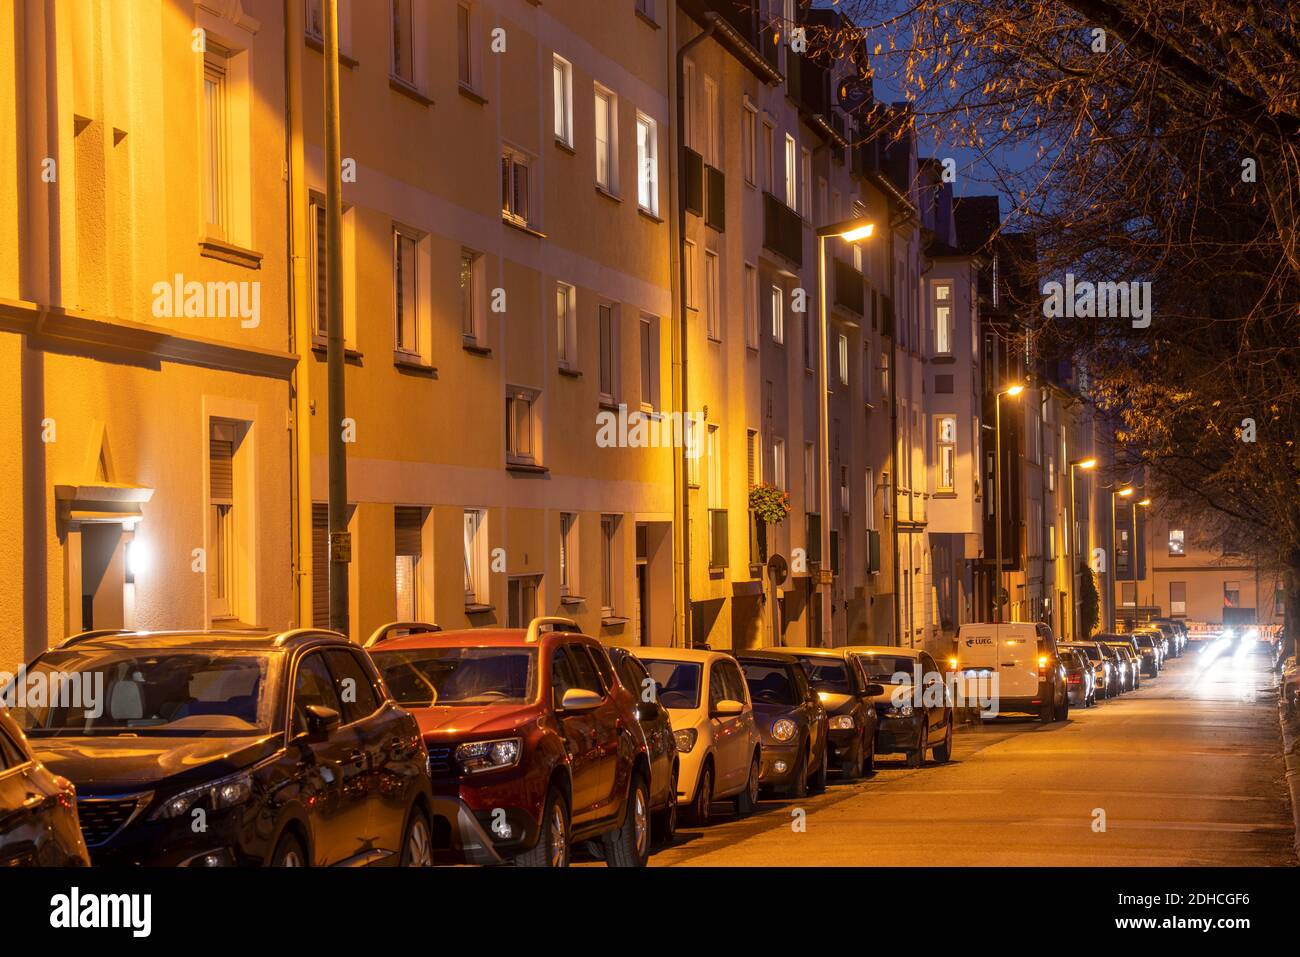 Wohnstrasse, viele Mehrfamilienhäuser in einem Wohnviertel, abends, Laternen Beleuchtung, Essen, NRW, Deutschland Foto Stock